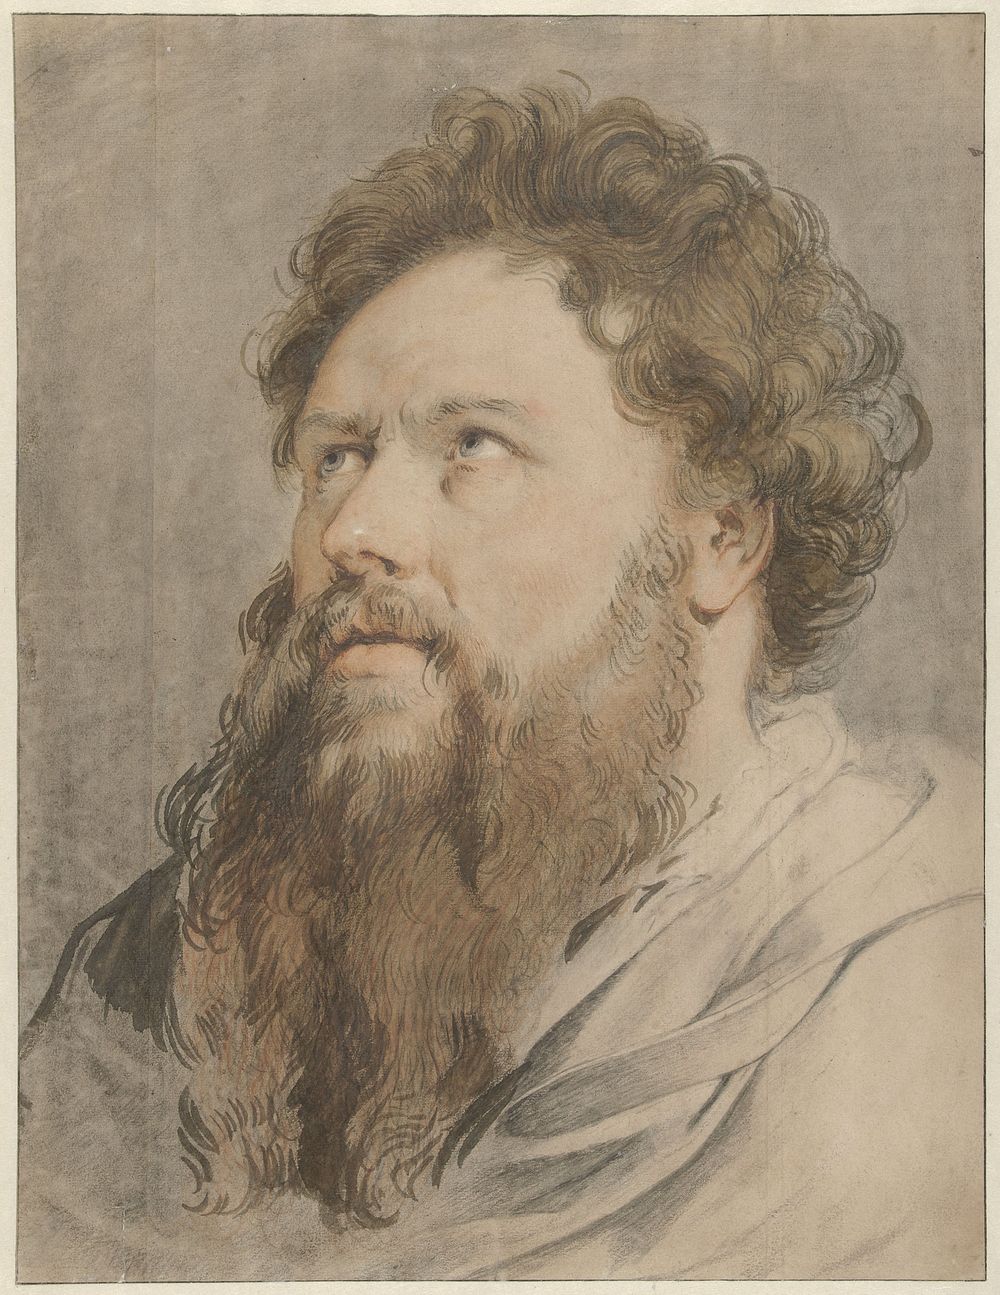 Hoofd van man met baard, de ogen zien opzij naar boven (1705 - 1754) by Jacob de Wit, Hendrick Goltzius and Peter Paul Rubens